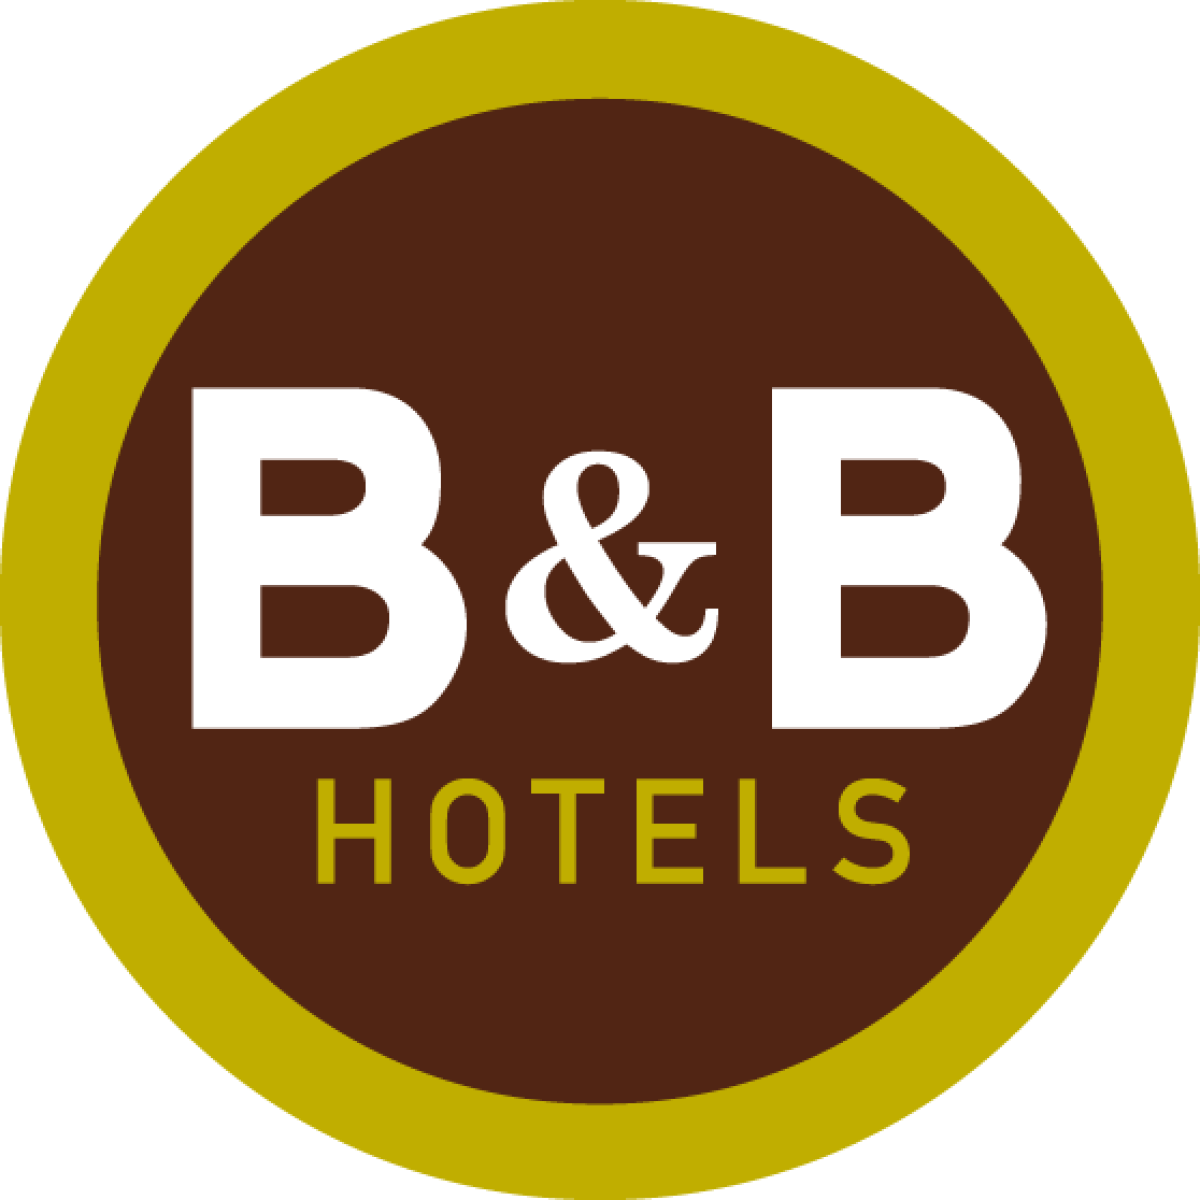 Krasnal Bamboszek we wrocławskim hotelu B&B 